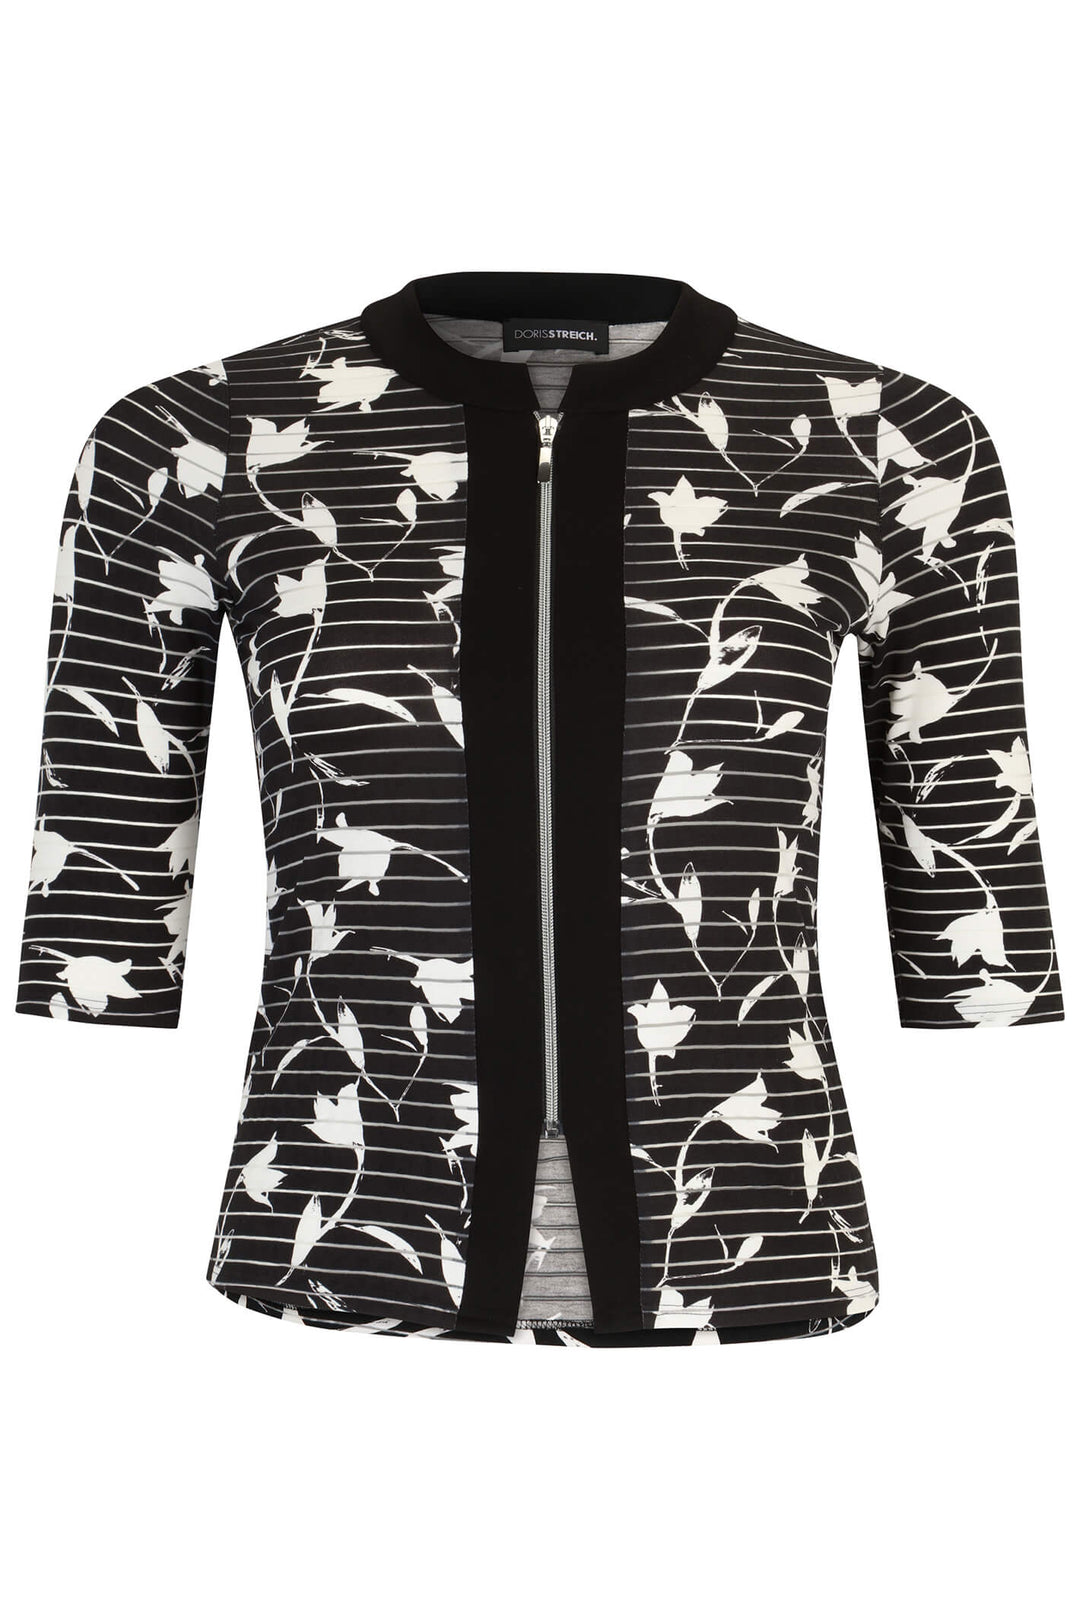 Doris Streich 396 326 Black White Floral Print Zip Front Jacket - Rouge Boutique